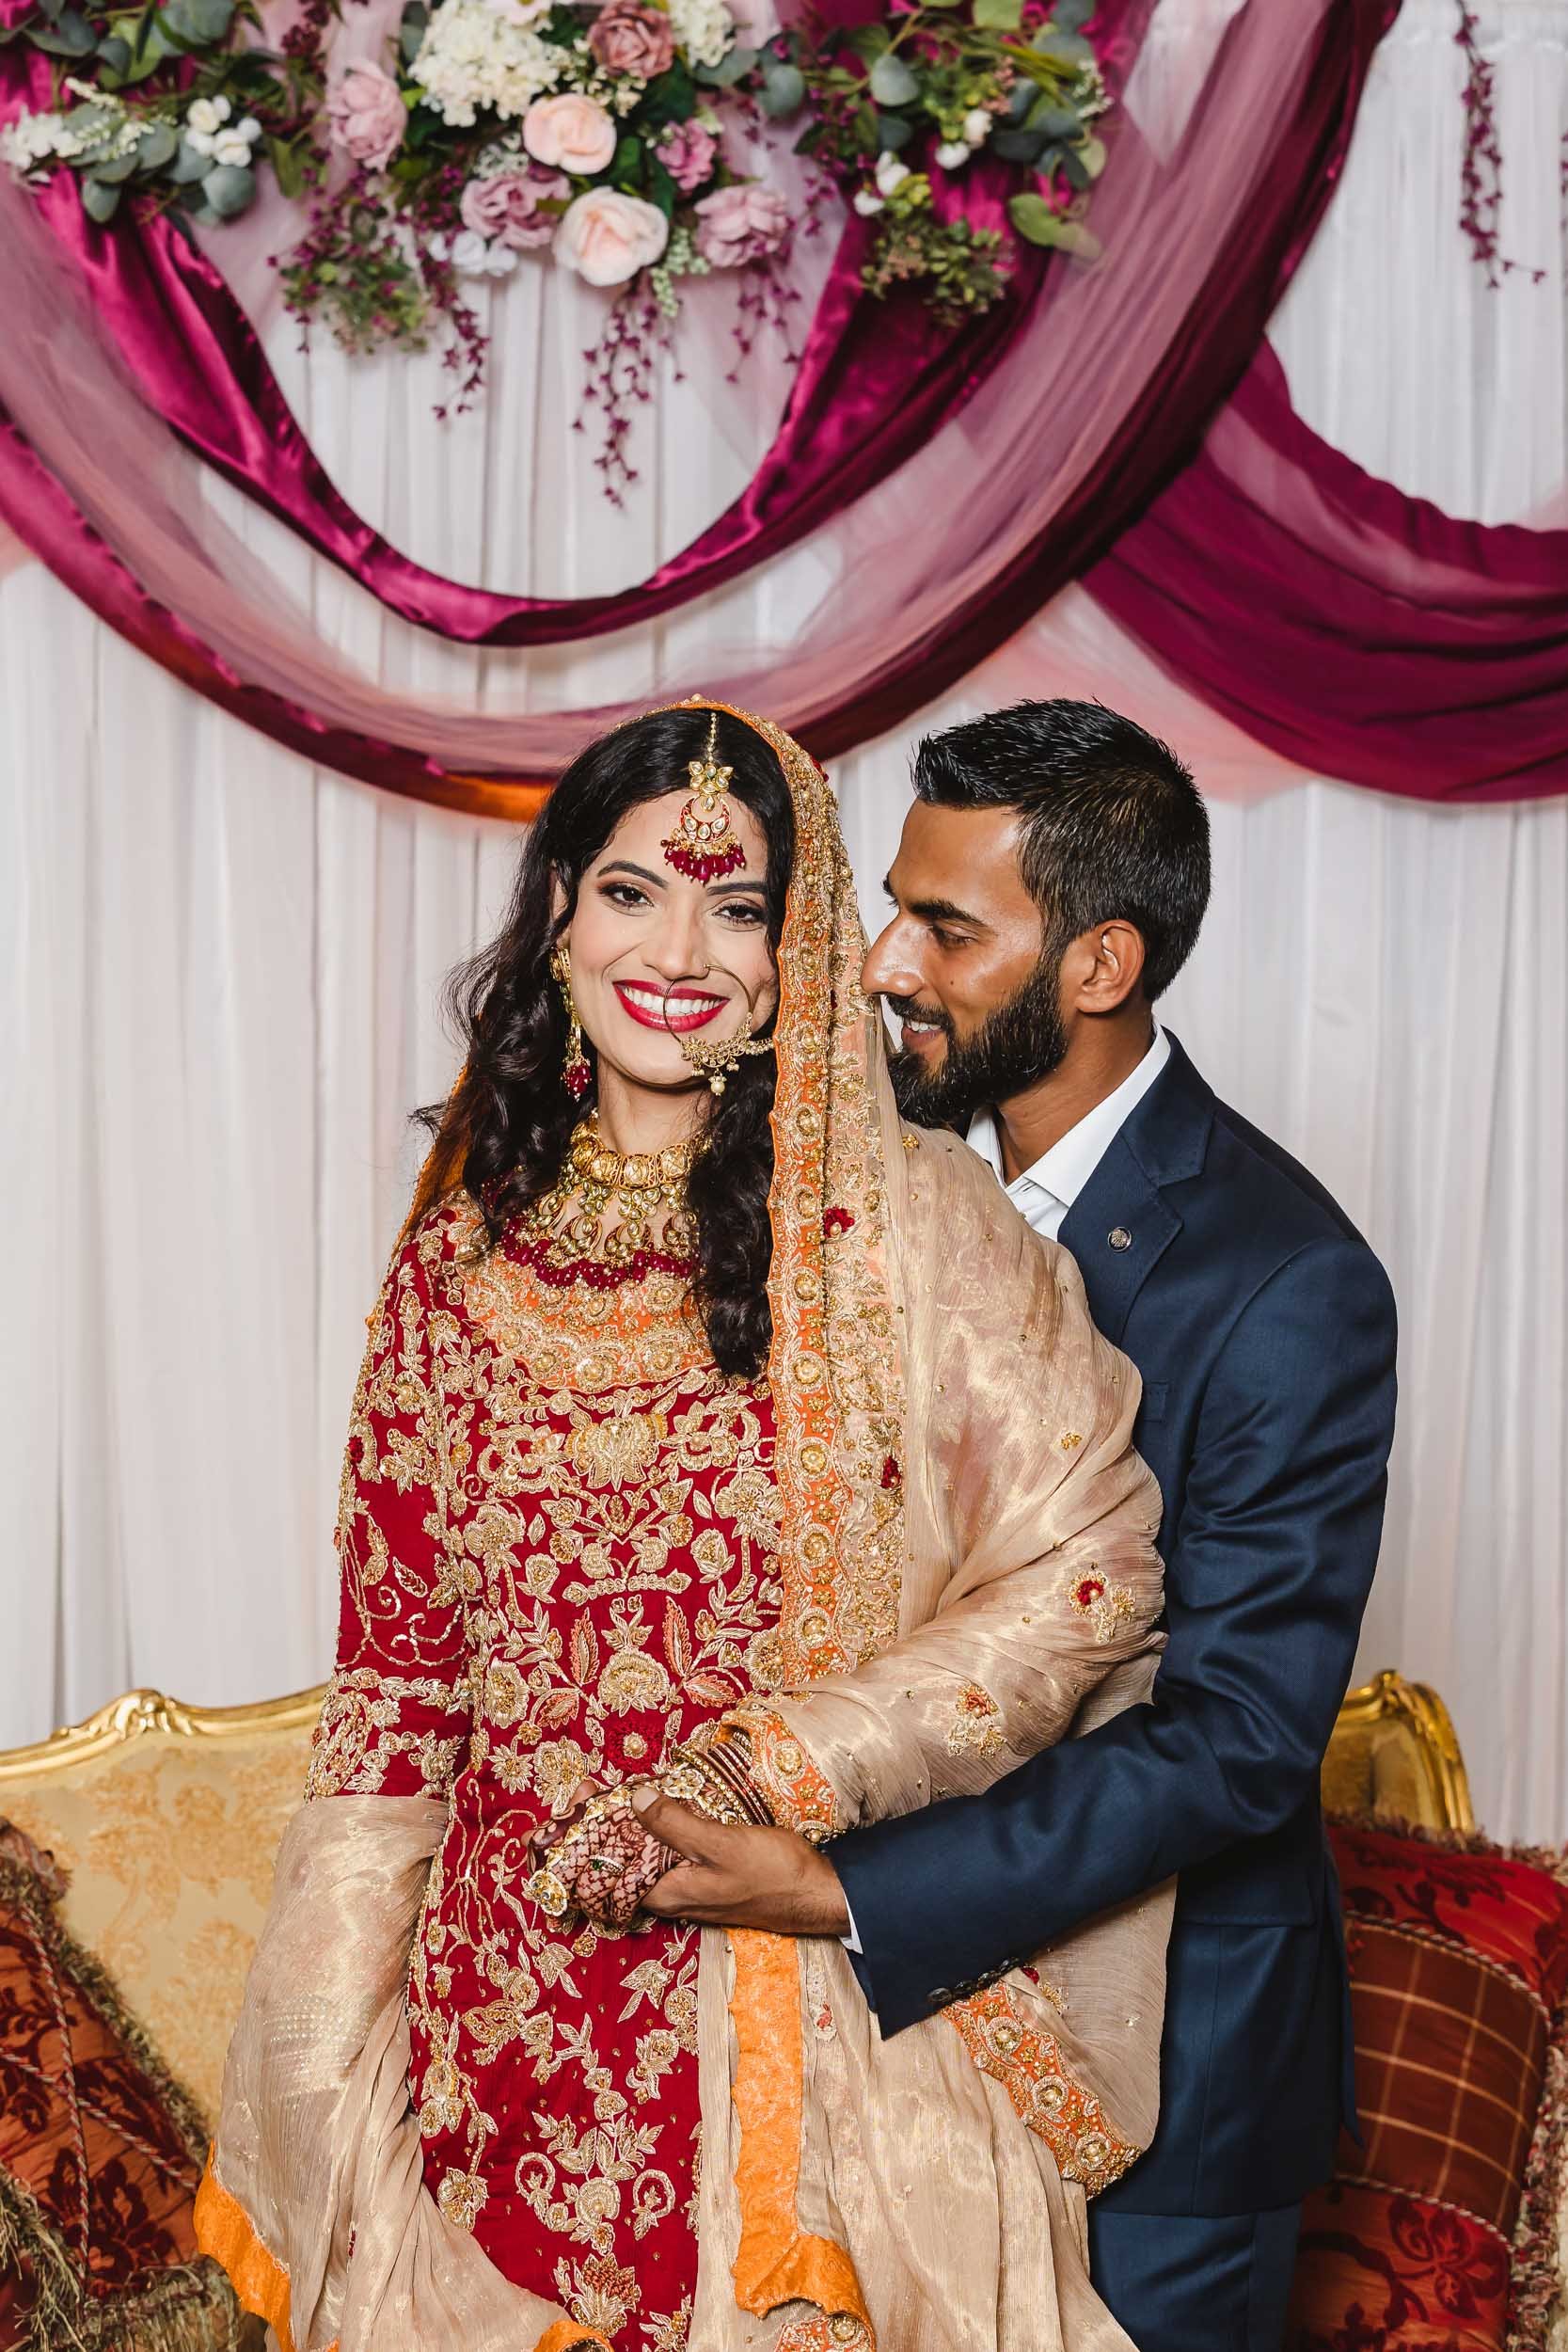 Muslim bride and groom portrait